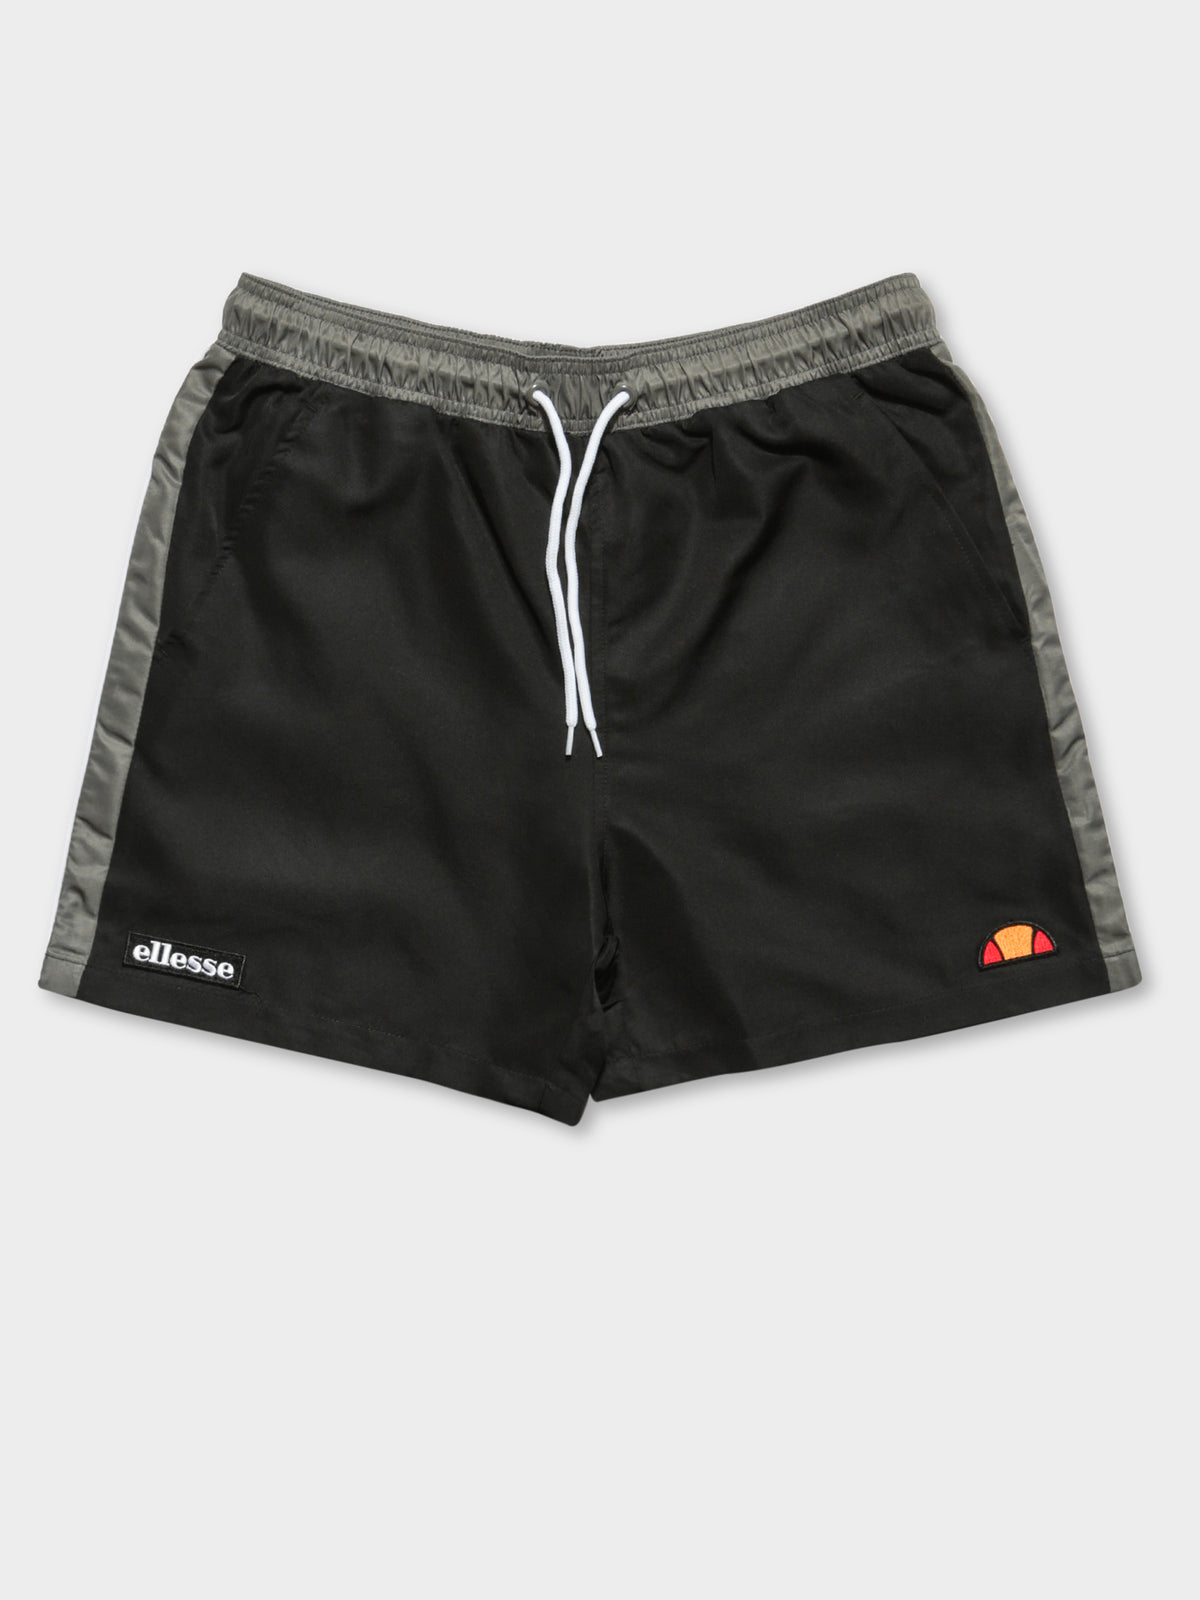 Genoa Swim Shorts in Black